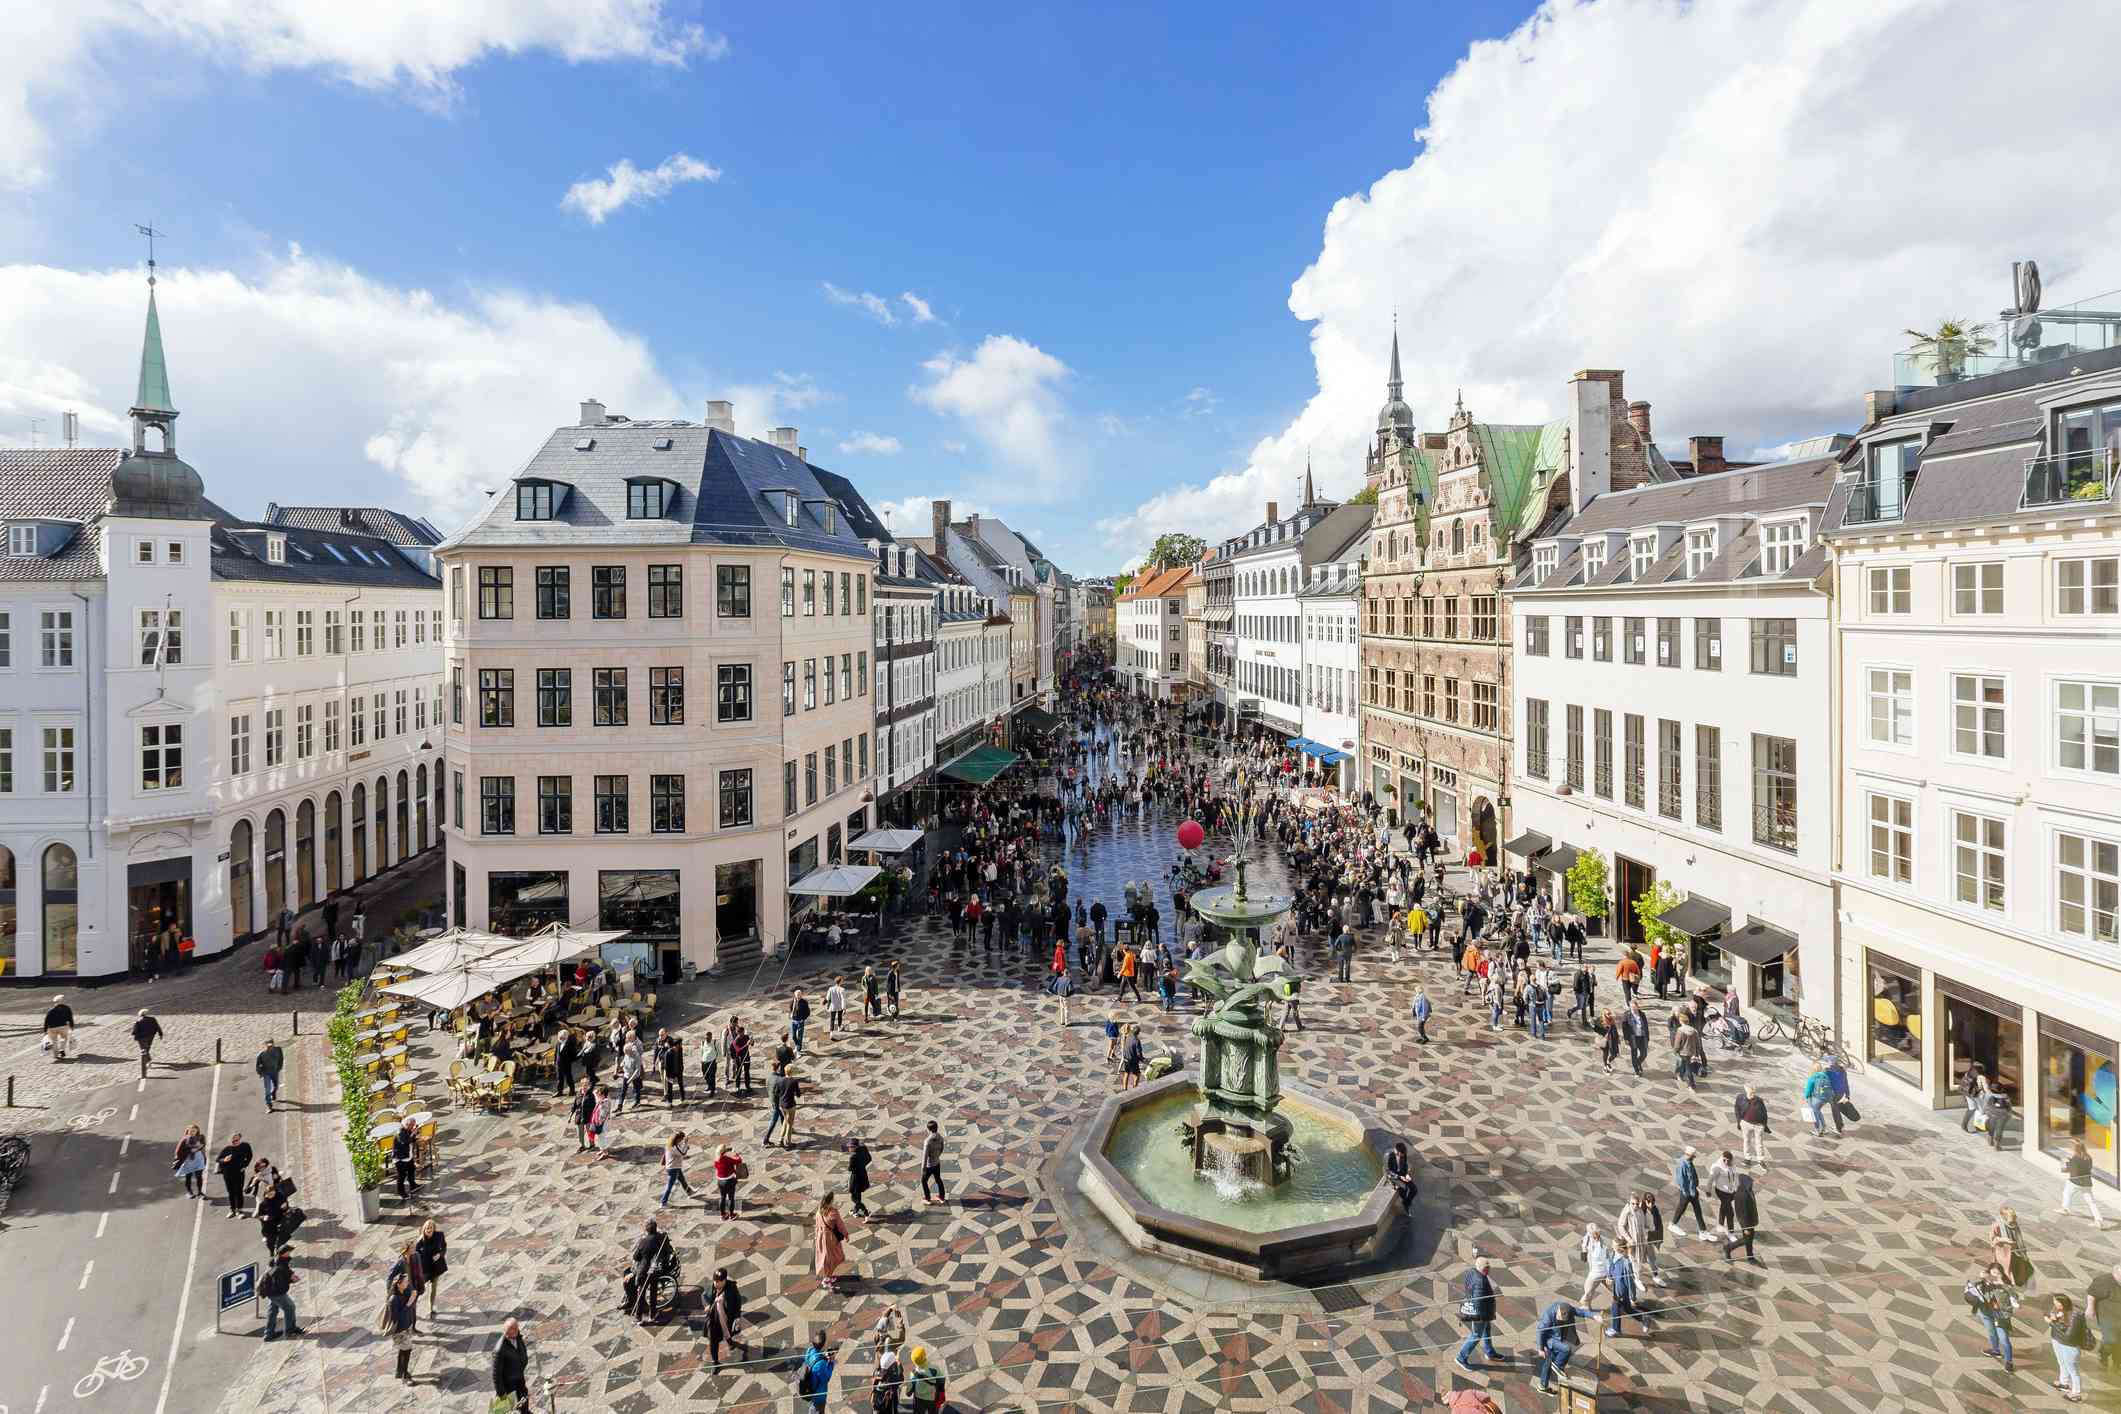 在一个阳光明媚的日子里，人们在蓝天白云下漫步在哥本哈根的阿马格托夫镇广场上，广场两边的建筑中心都有一个喷泉